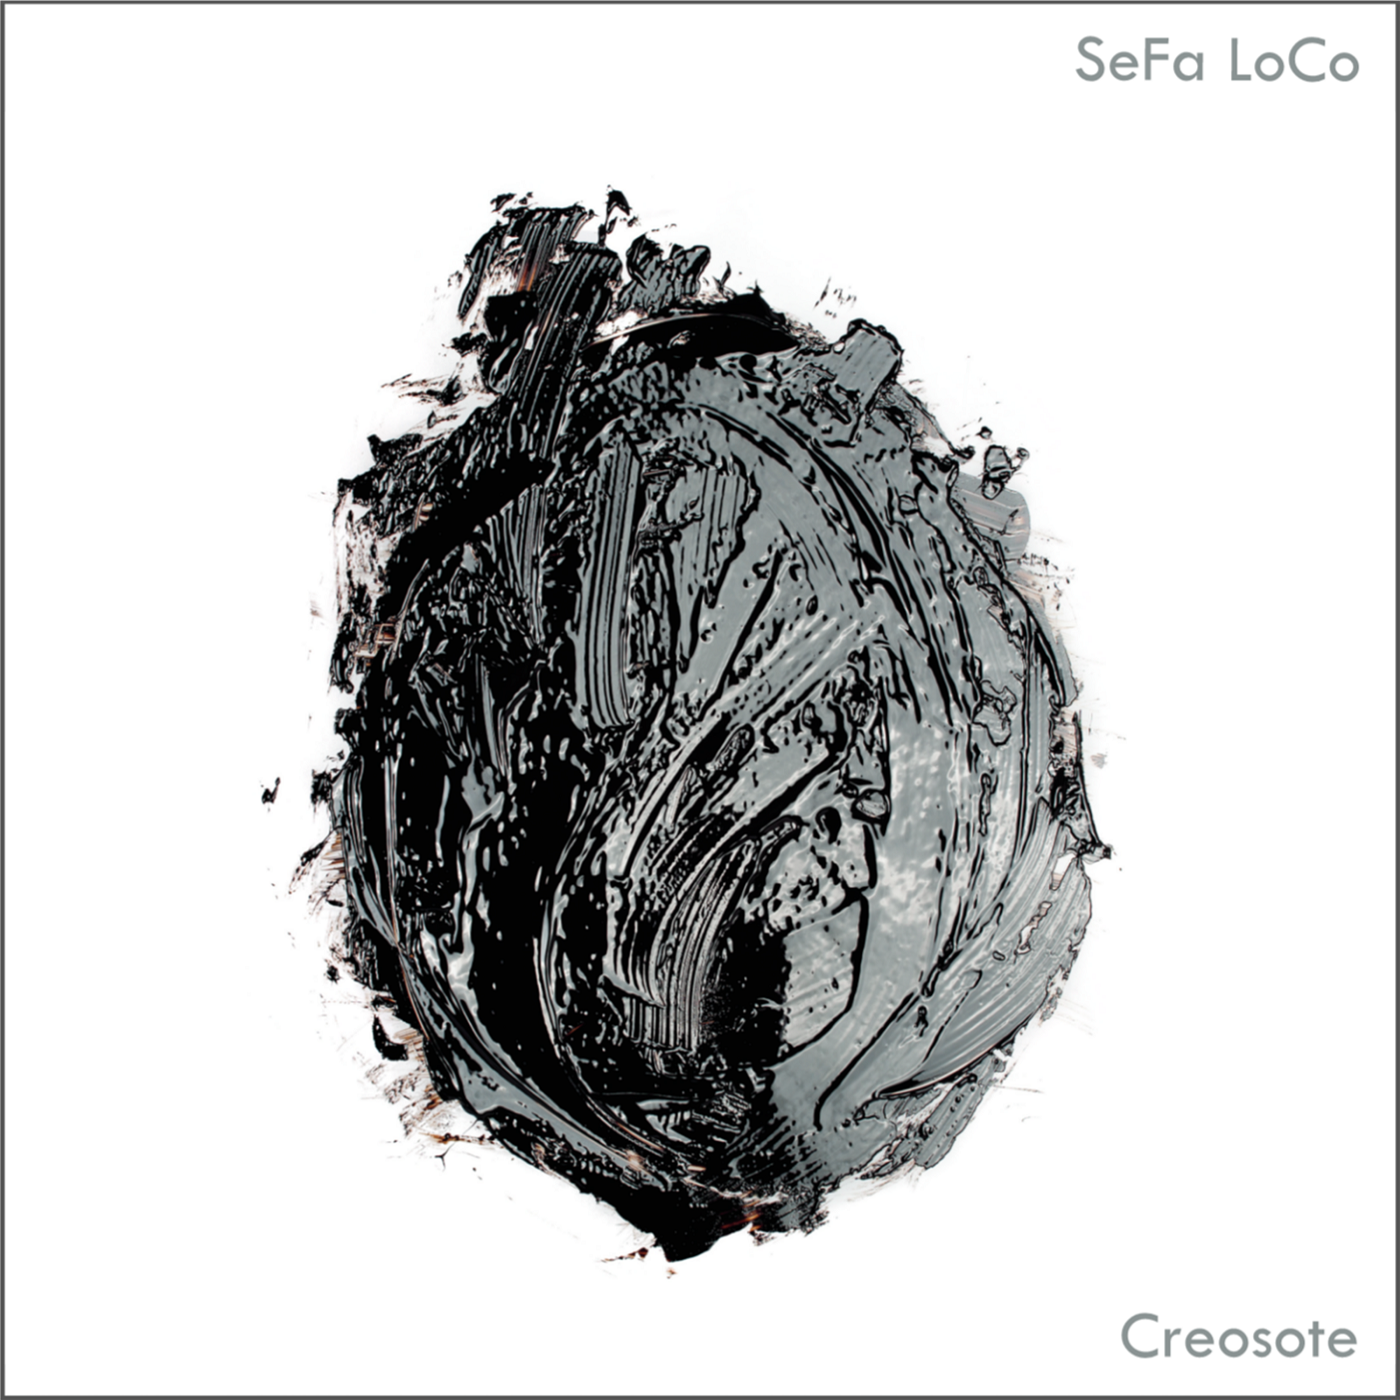 SeFa LoCo: Creosote